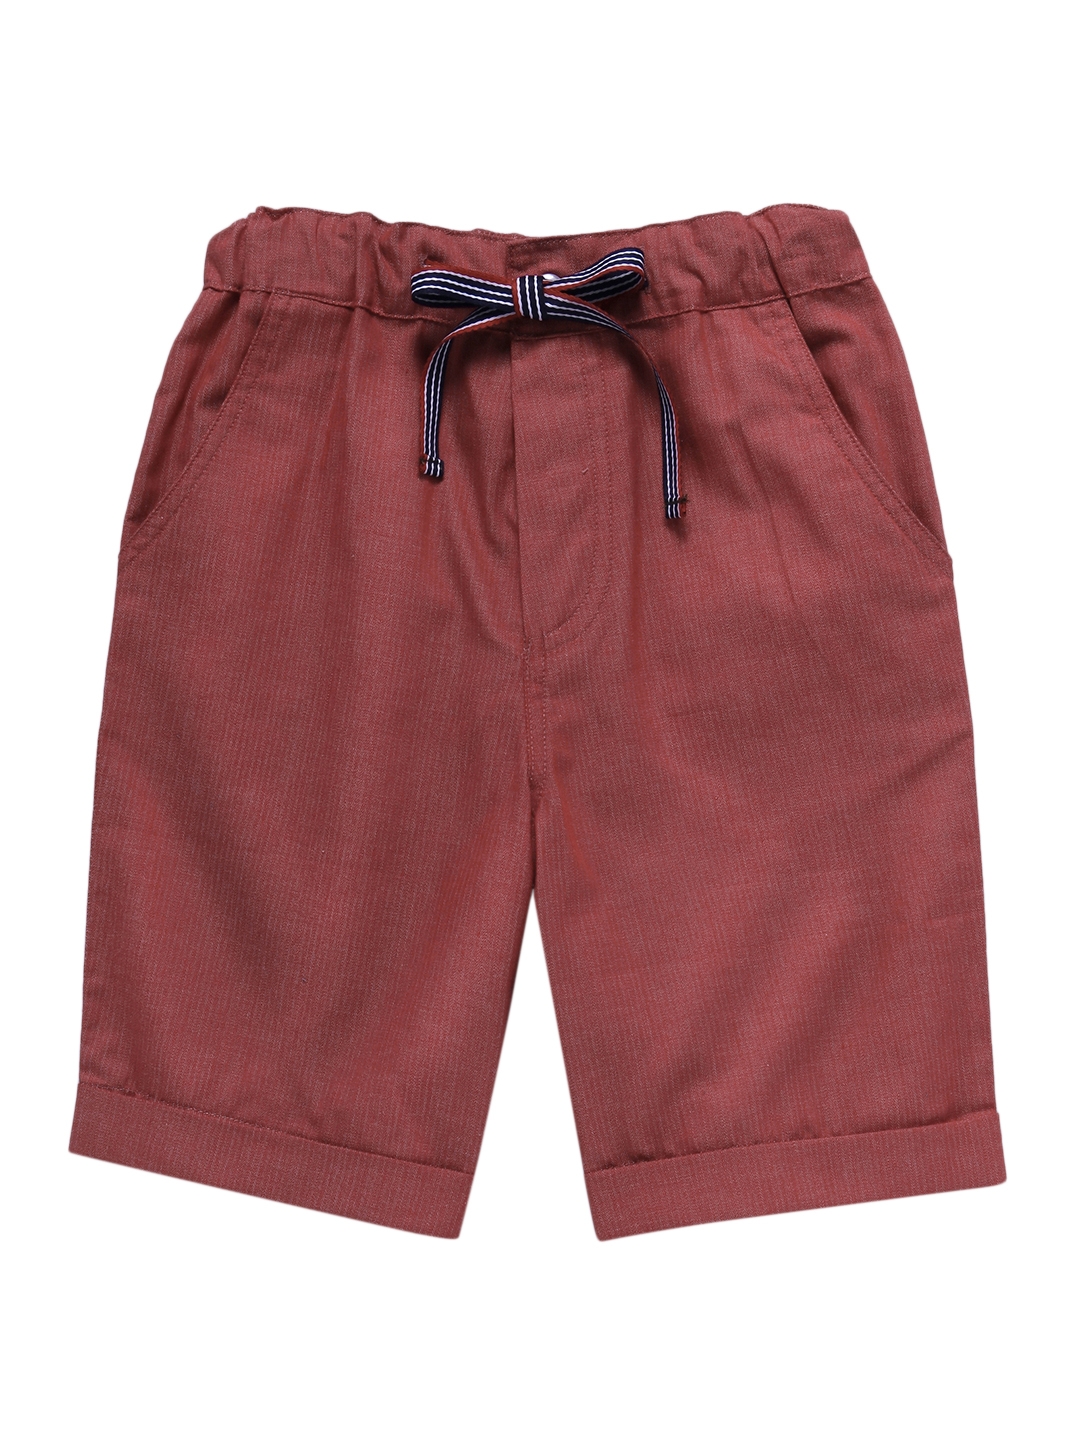 Popsicles Clothing | Popsicles Garnet Shorts Regular Fit For Boys